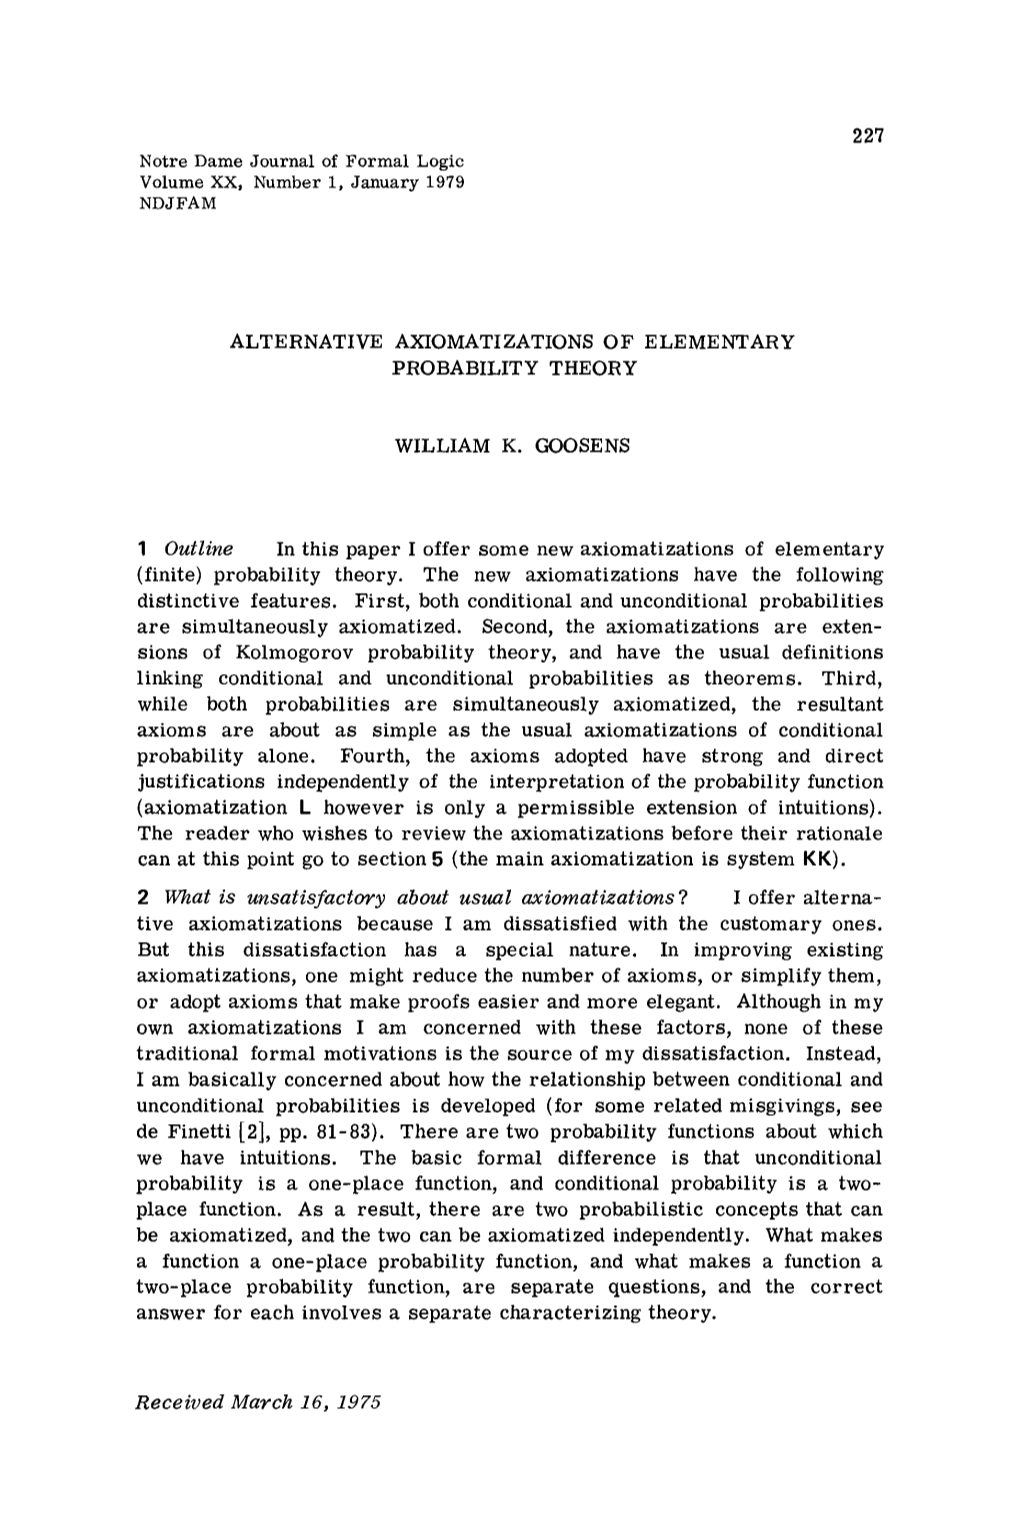 Alternative Axiomatizations of Elementary Probability Theory